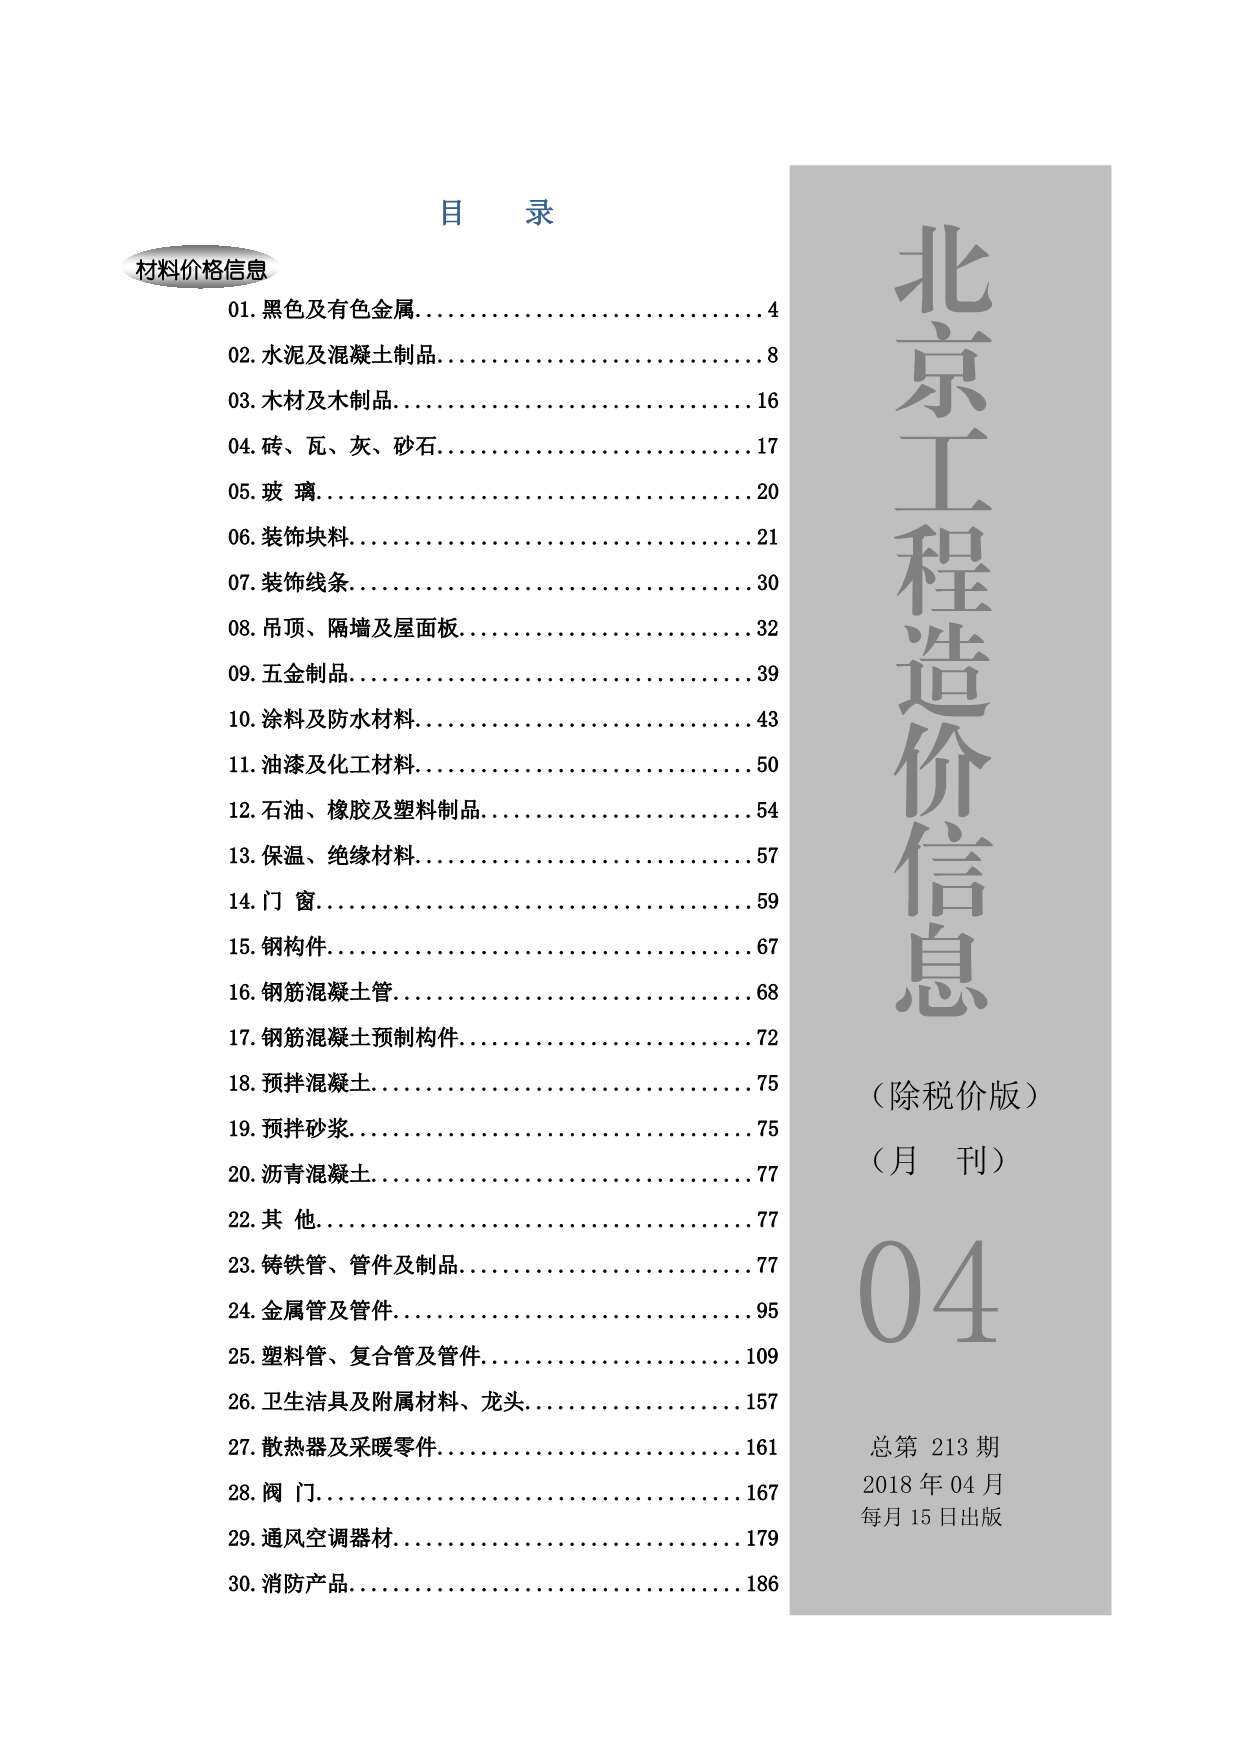 2018年4期北京市除税价版工程造价信息期刊